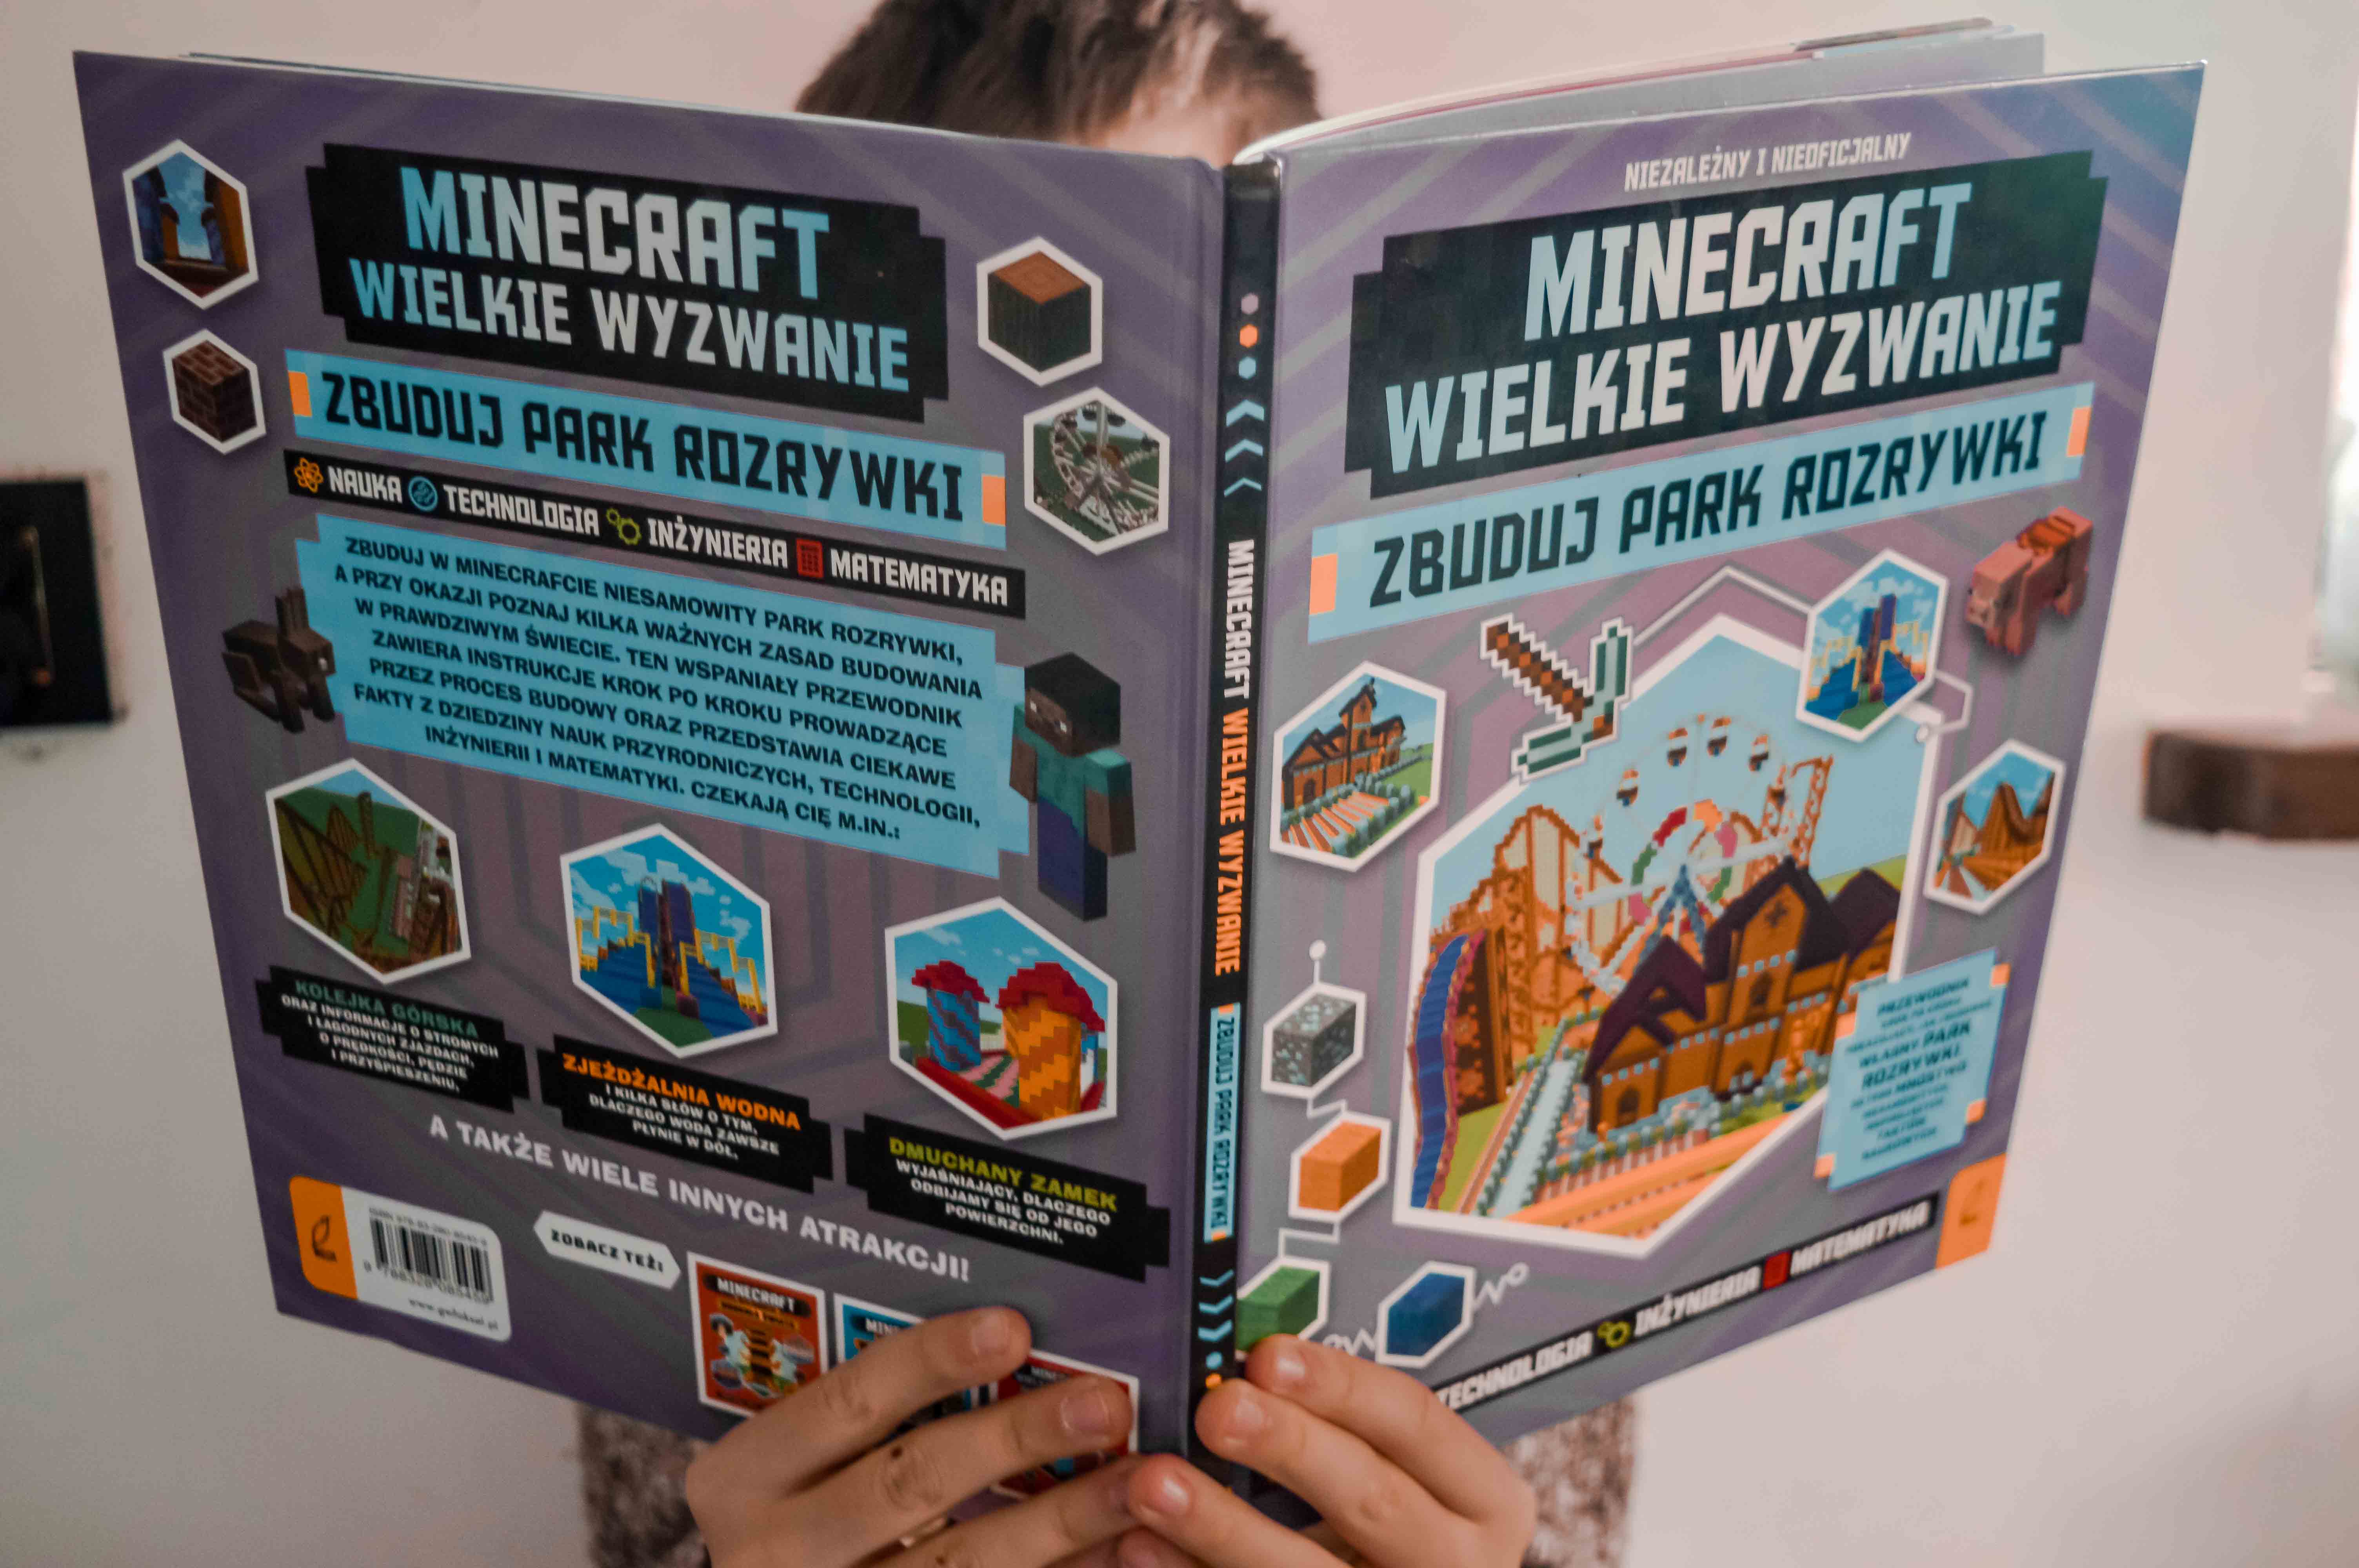 Minecraft Jak zudować park rozrywki - Jk zbudowac boisko i budynek - poradnik - przewodnik o grach dla dzieci i młodzeży - sria - ksiązki dla natolatków